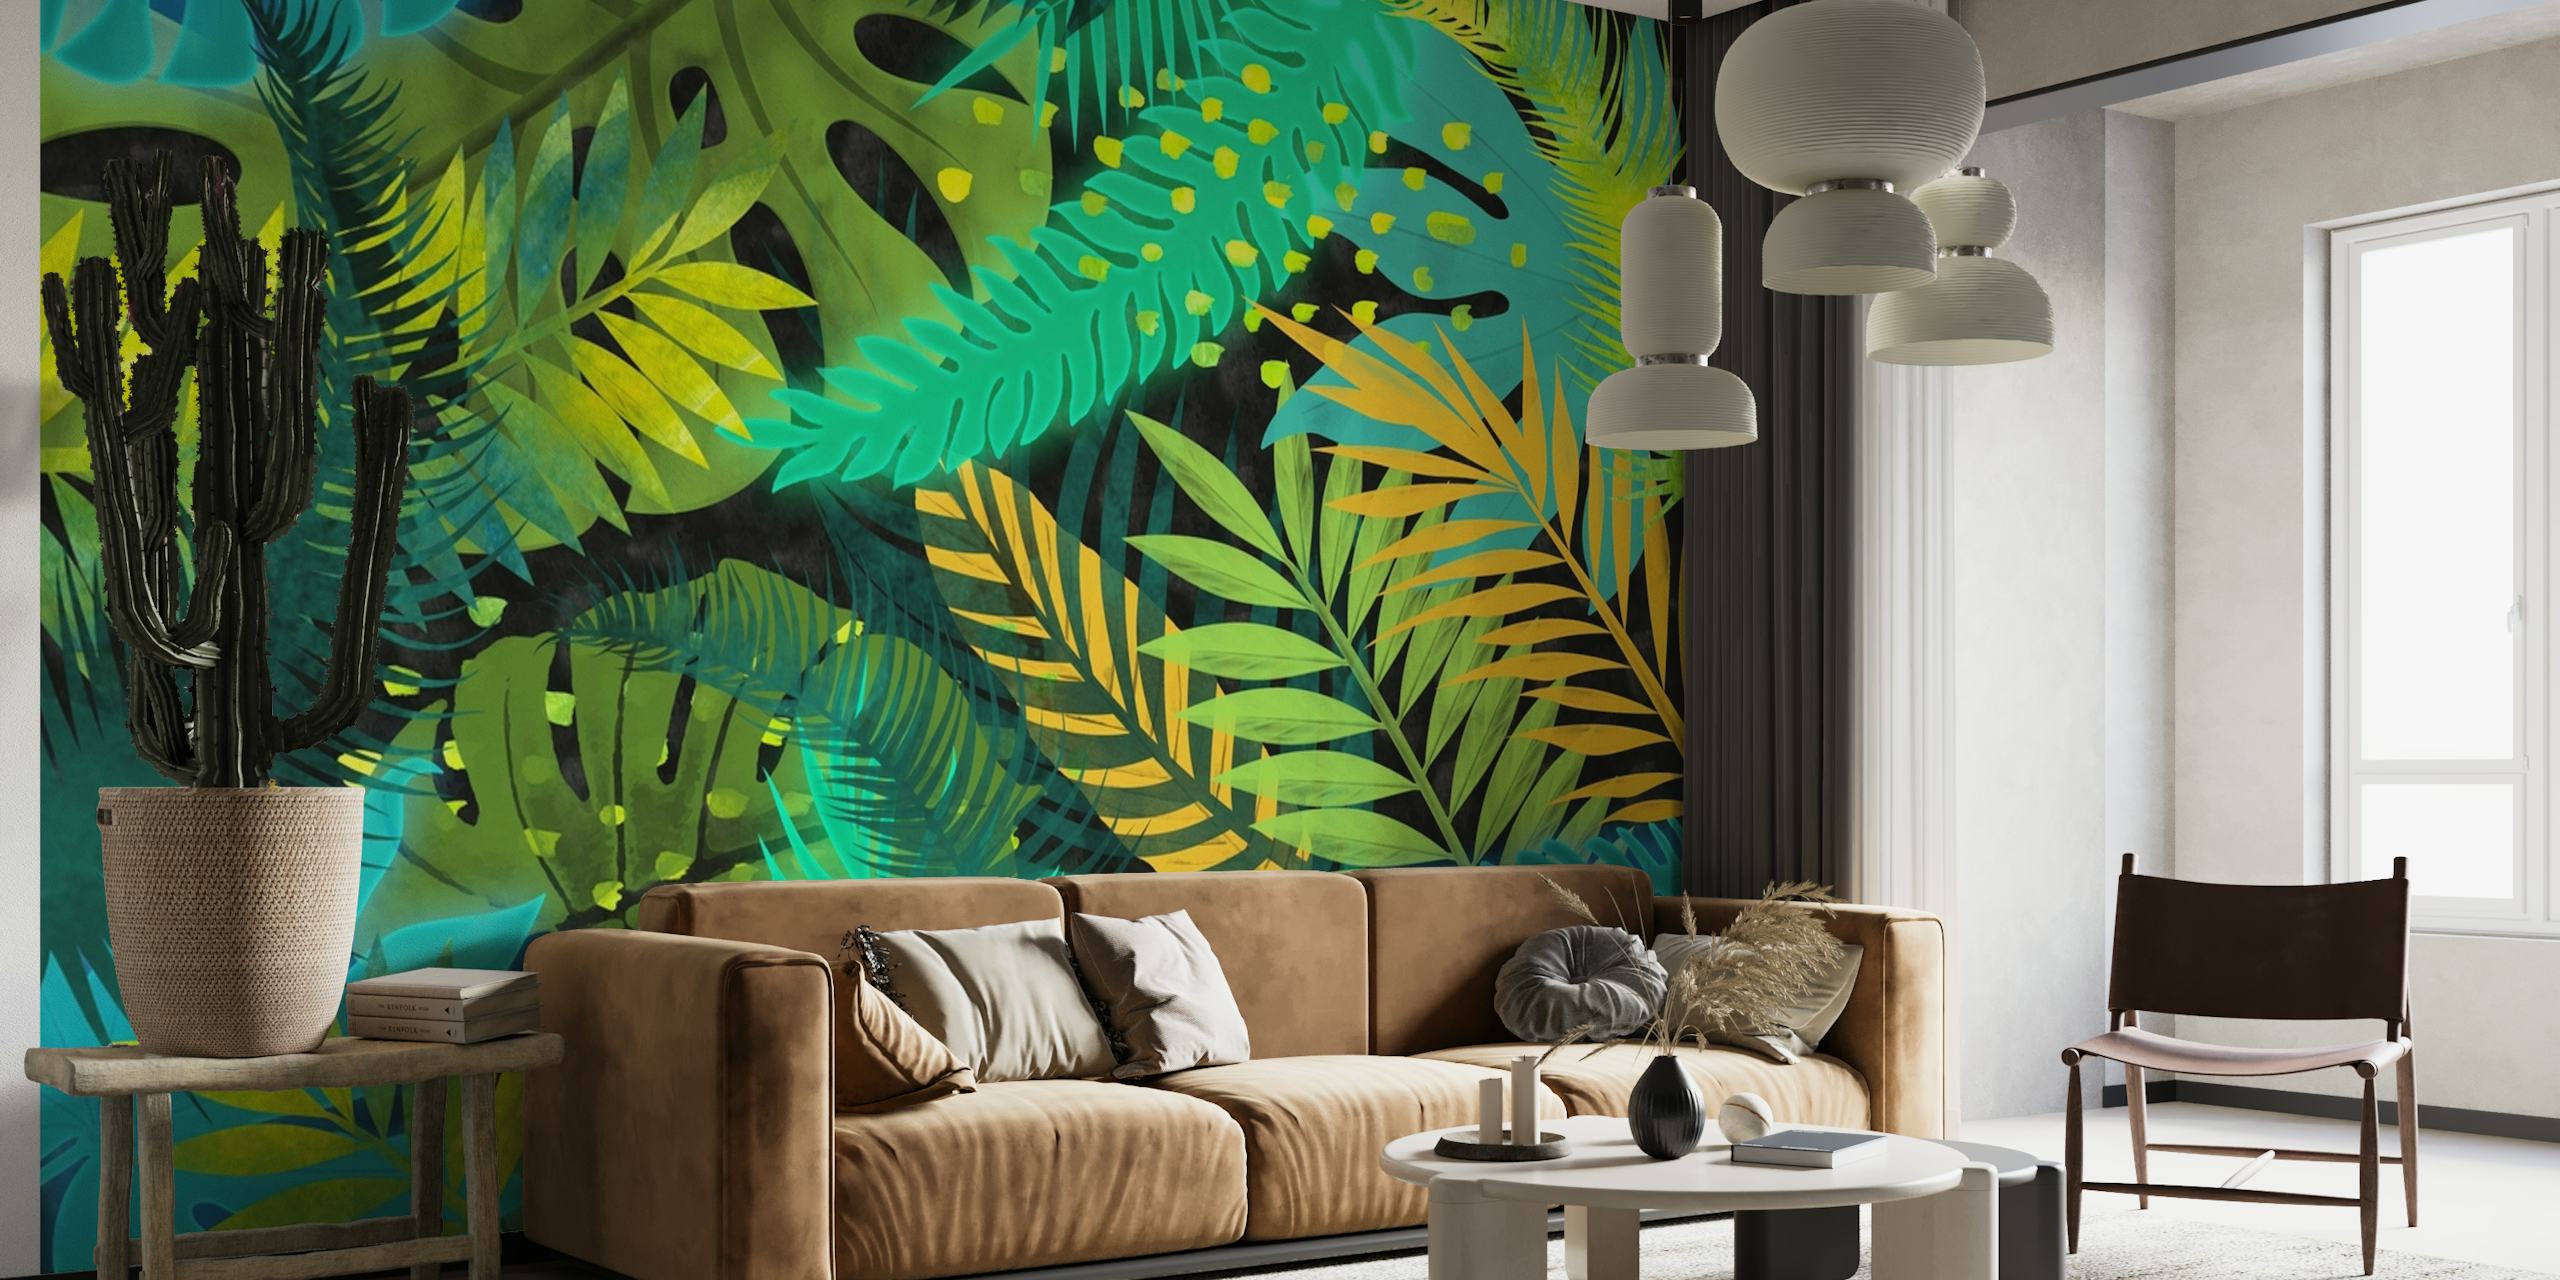 Fototapeta s tropickými listy s modrými, zelenými a žlutými listy pro dekoraci interiéru